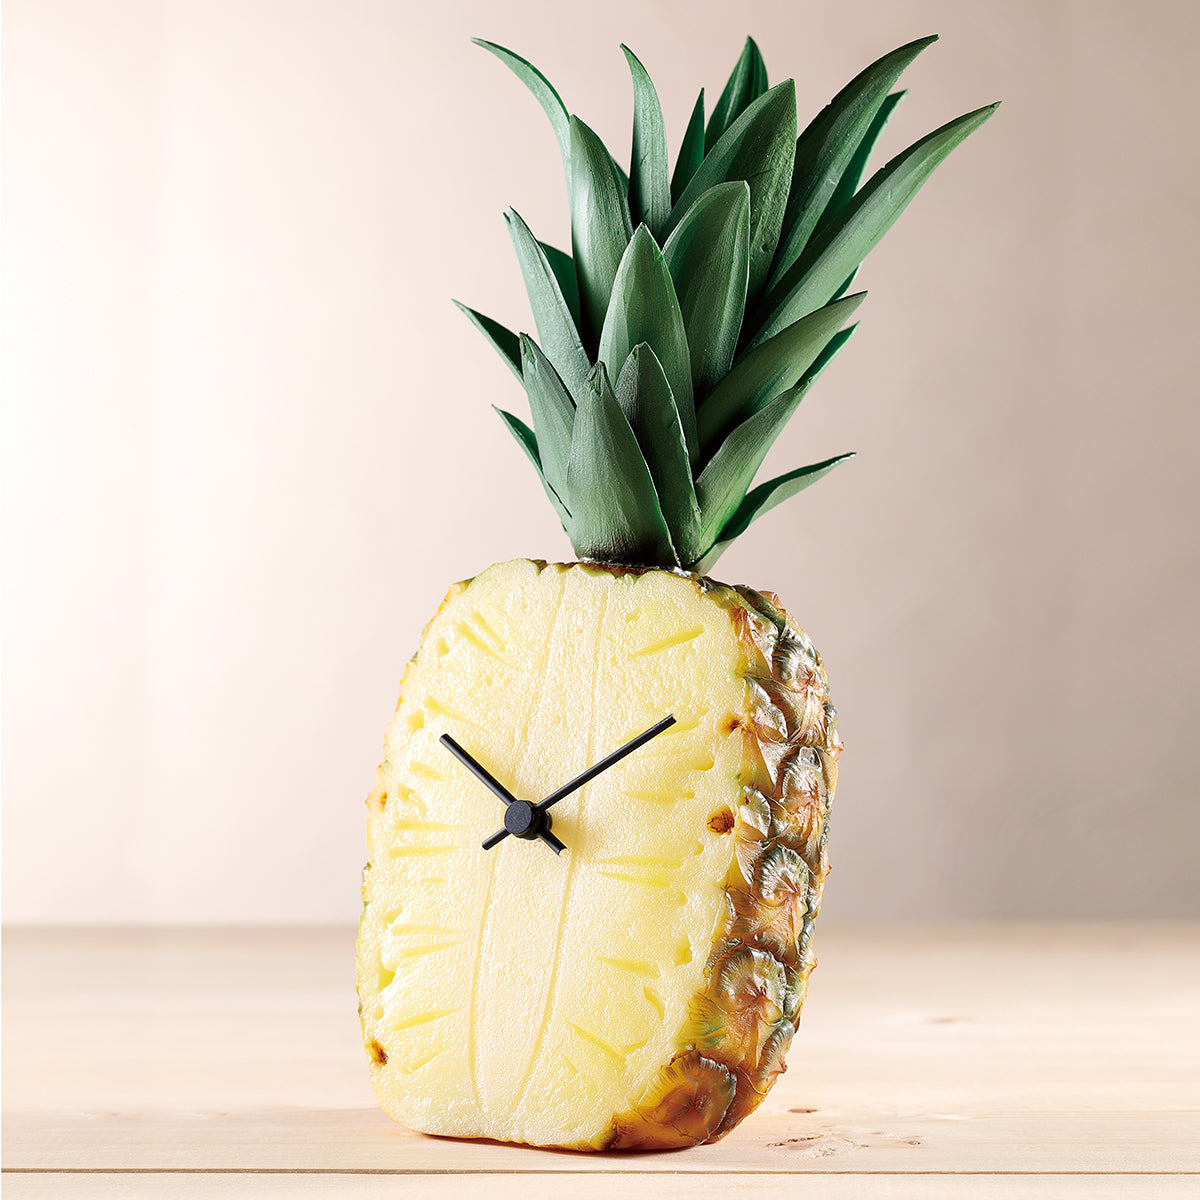 これは元祖食品サンプル屋「Replica Food Clock  パイナップル」の商品写真斜めカットです。